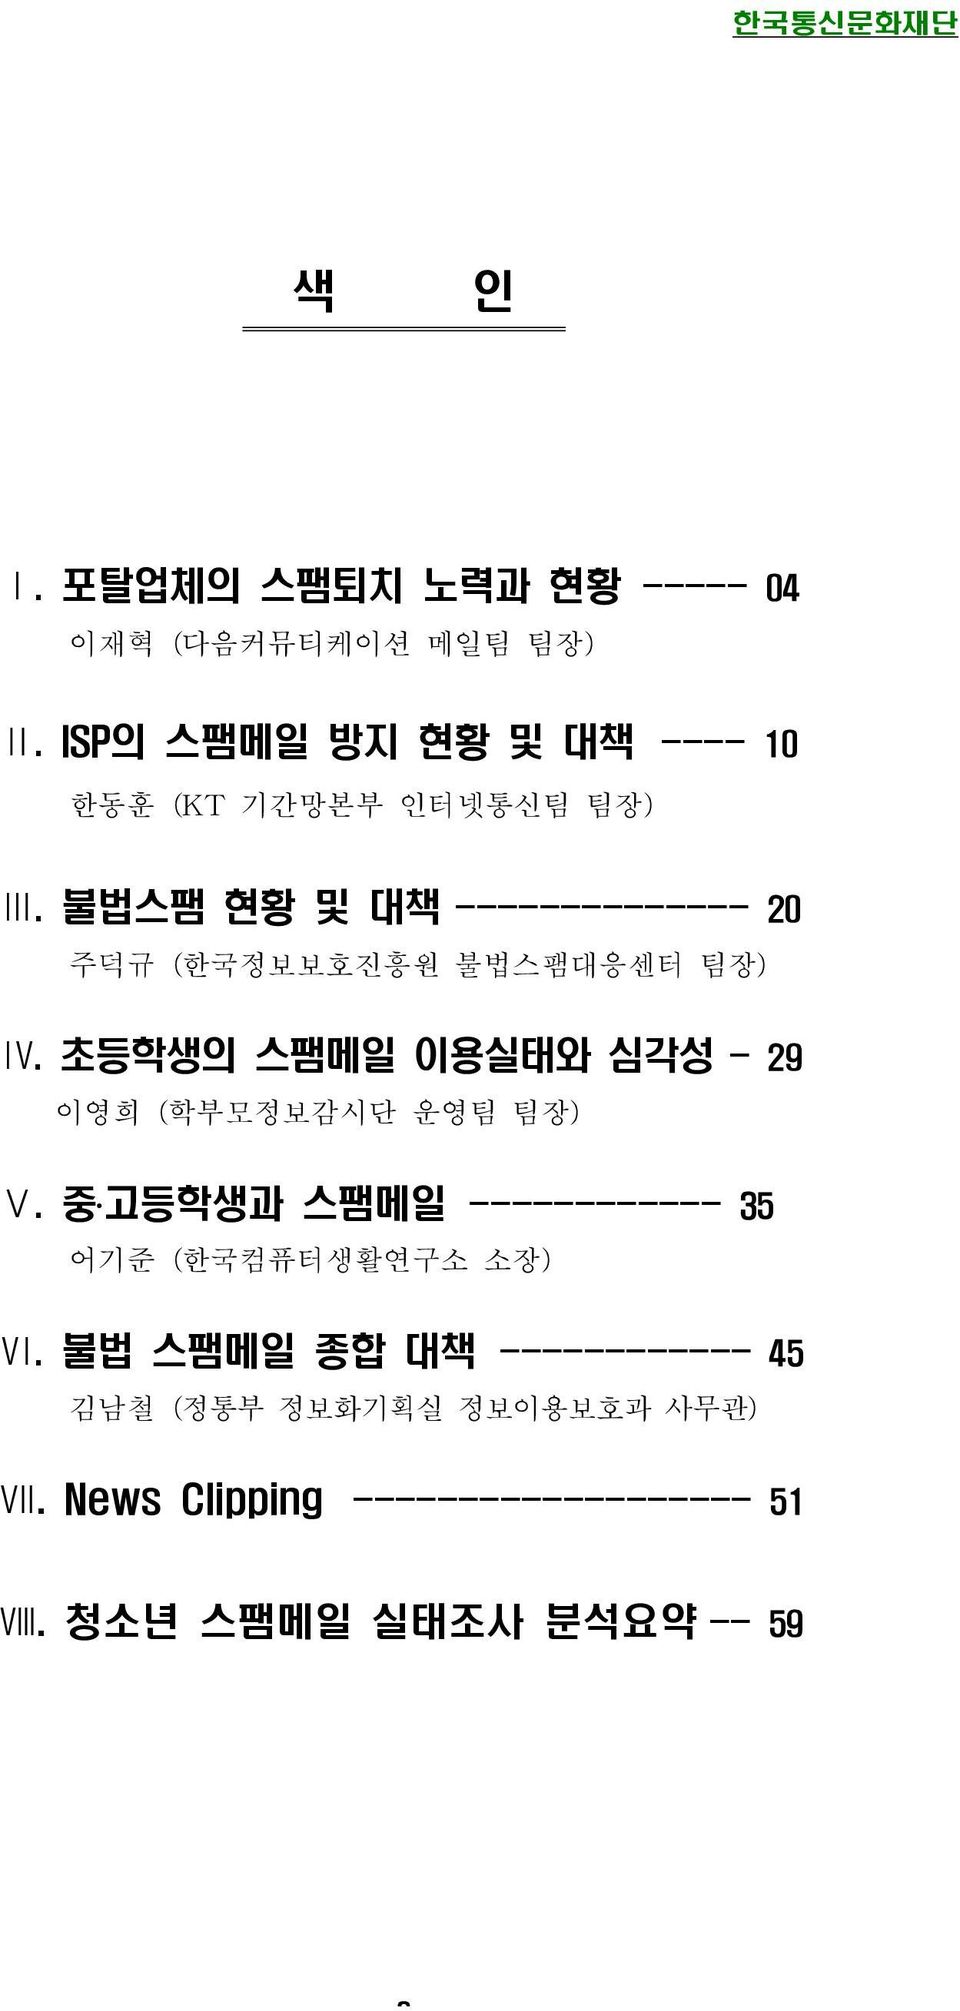 불법스팸 현황 및 대책 -------------- 20 주덕규 (한국정보보호진흥원 불법스팸대응센터 팀장) Ⅳ.